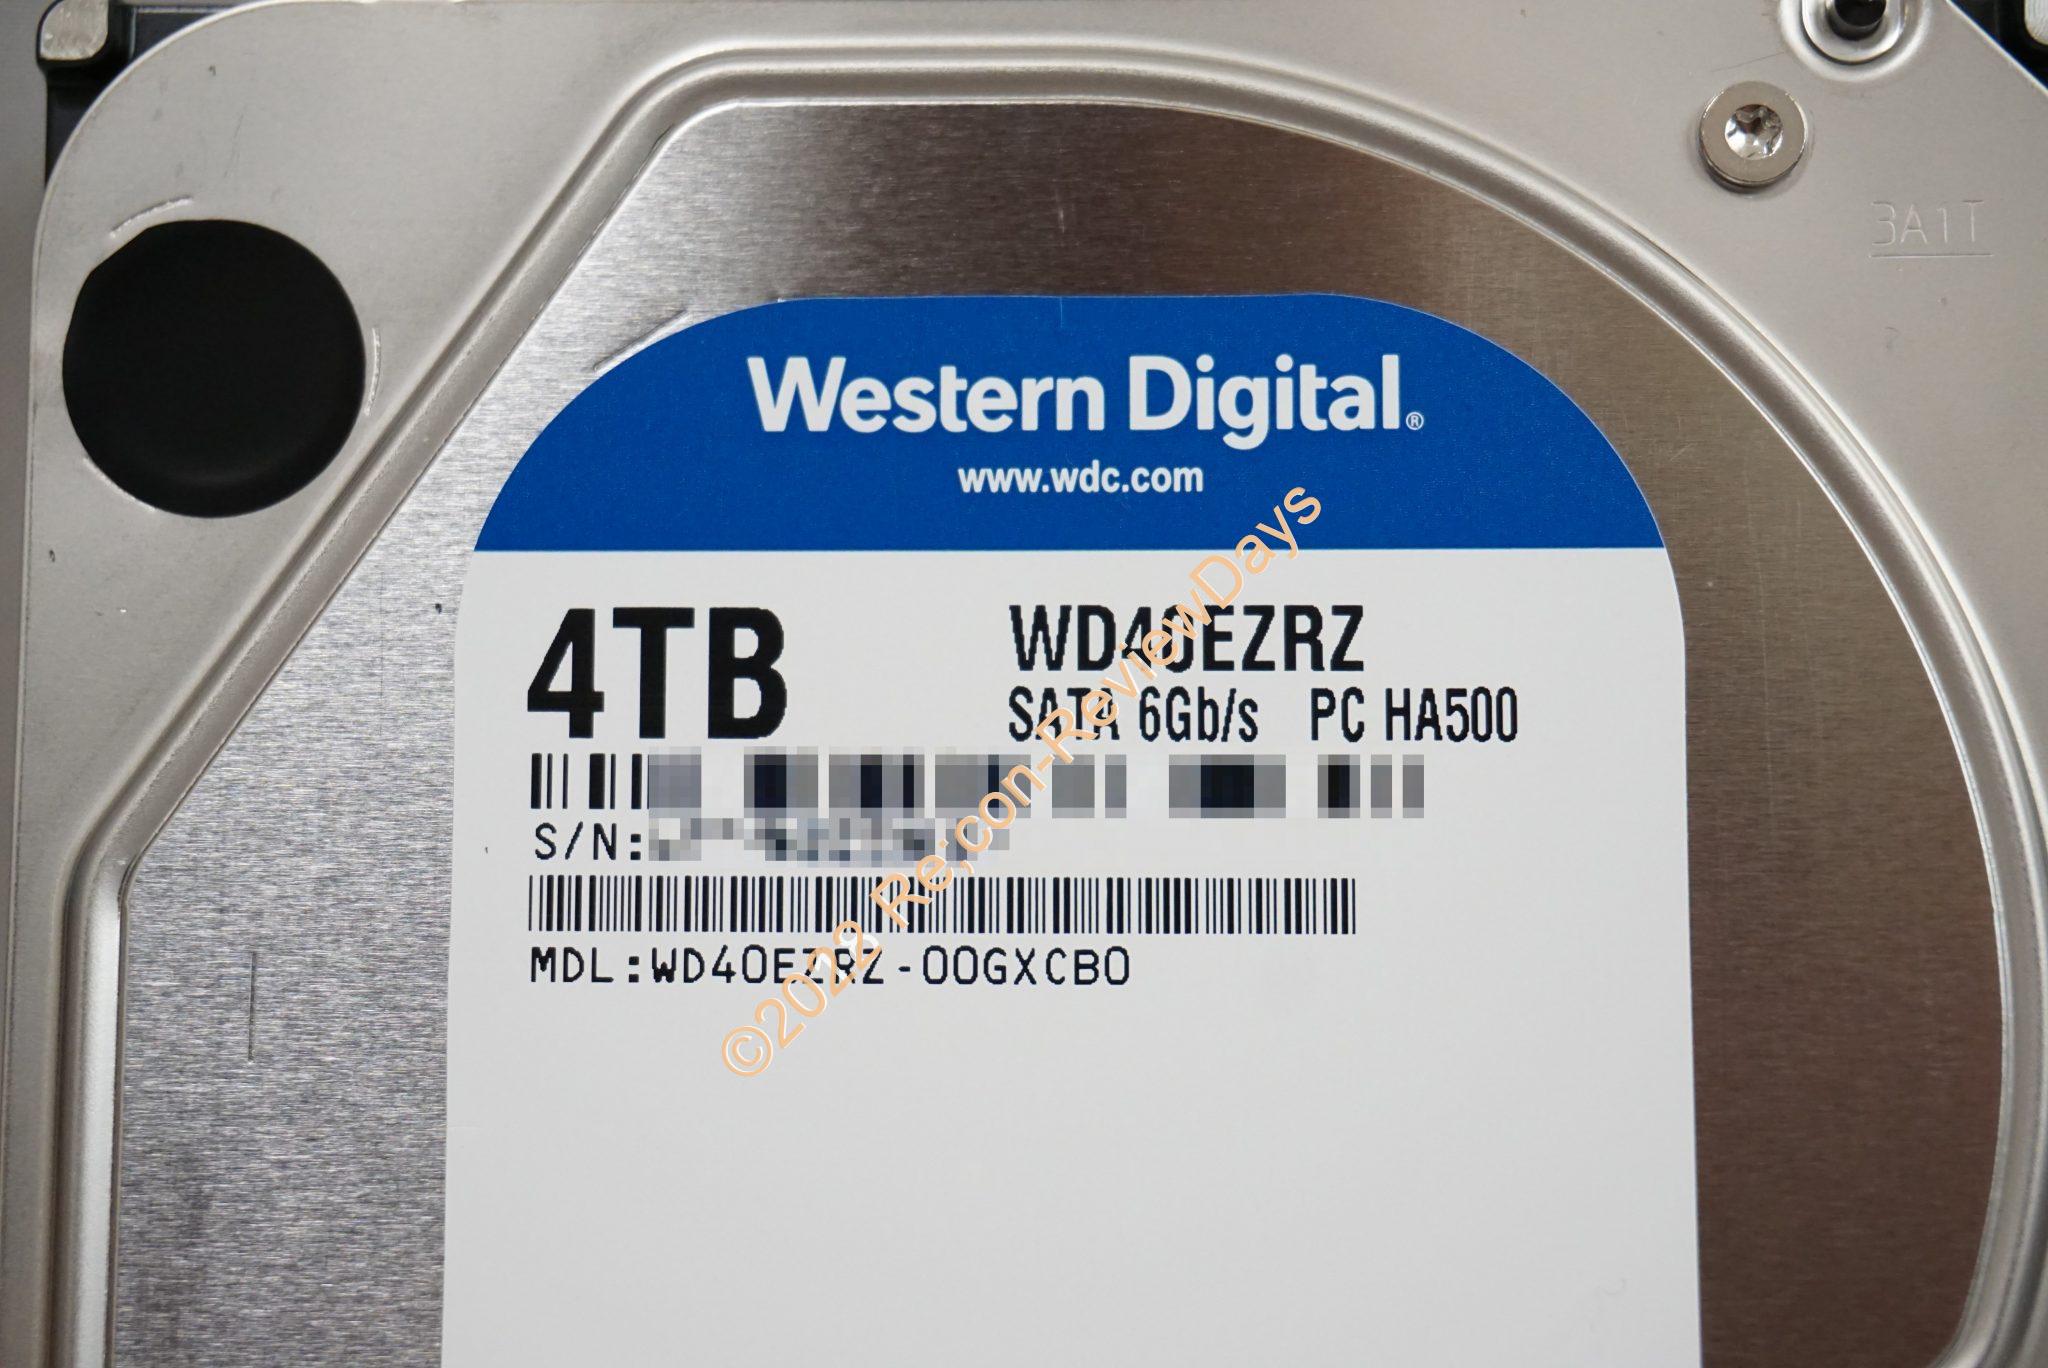 Western Digital 4TB HDD WD40EZRZ-00GXCB0(WD40EZRZ-RT2)のパフォーマンスをチェックする #HDD #WesternDigital